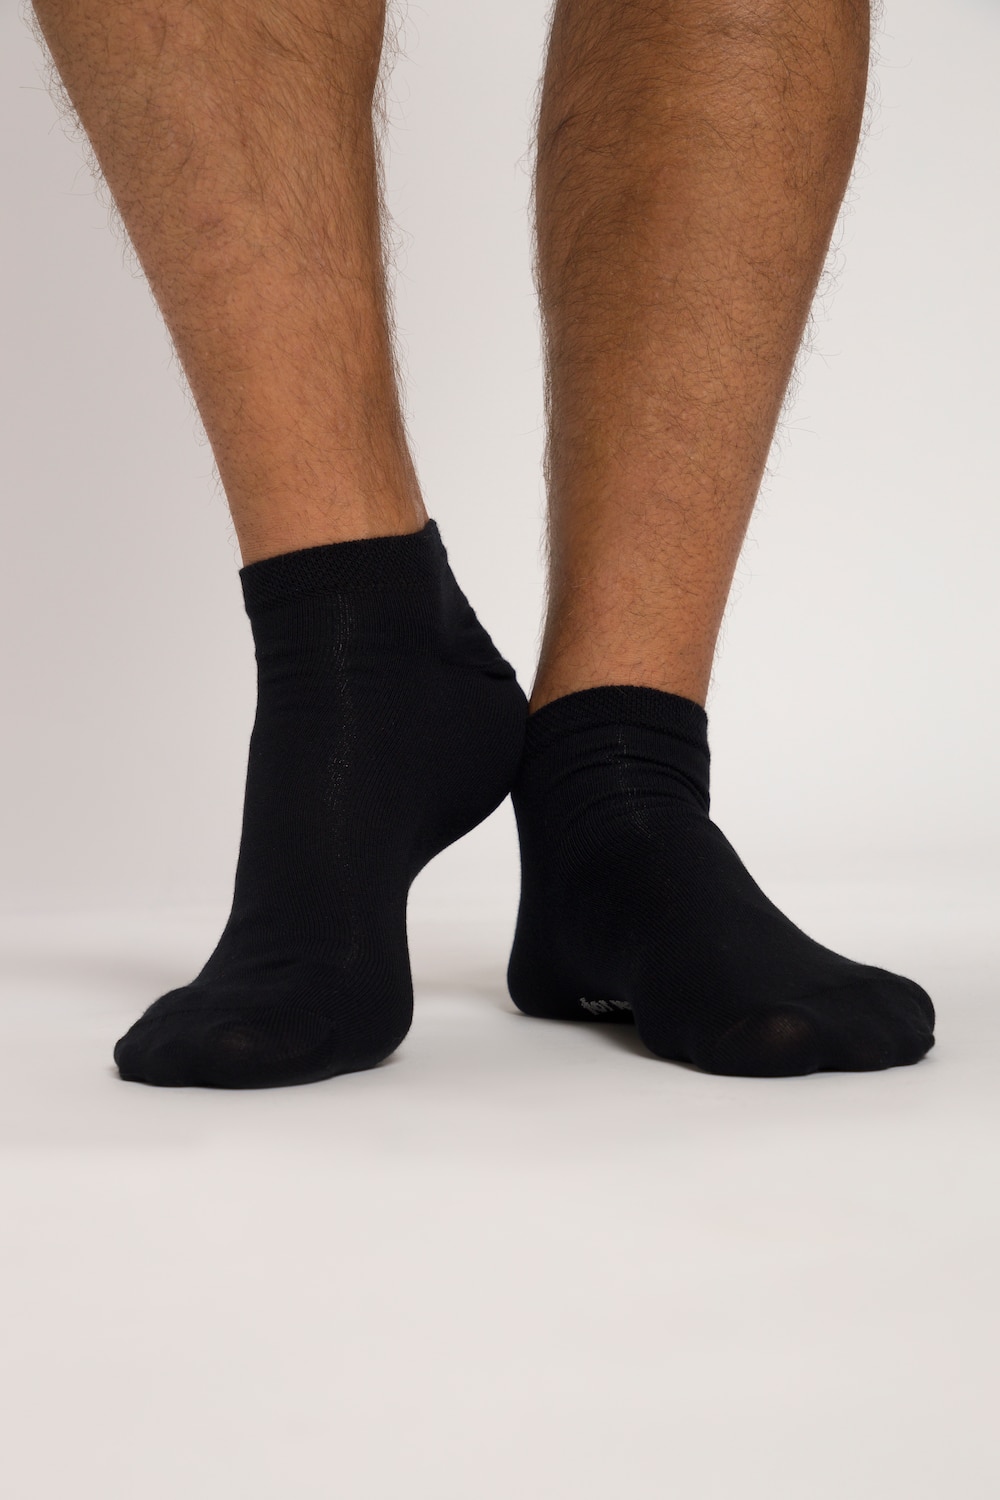 grandes tailles chaussettes pour sneakers, hommes, noir, taille: 43-46, coton/fibres synthétiques, jp1880